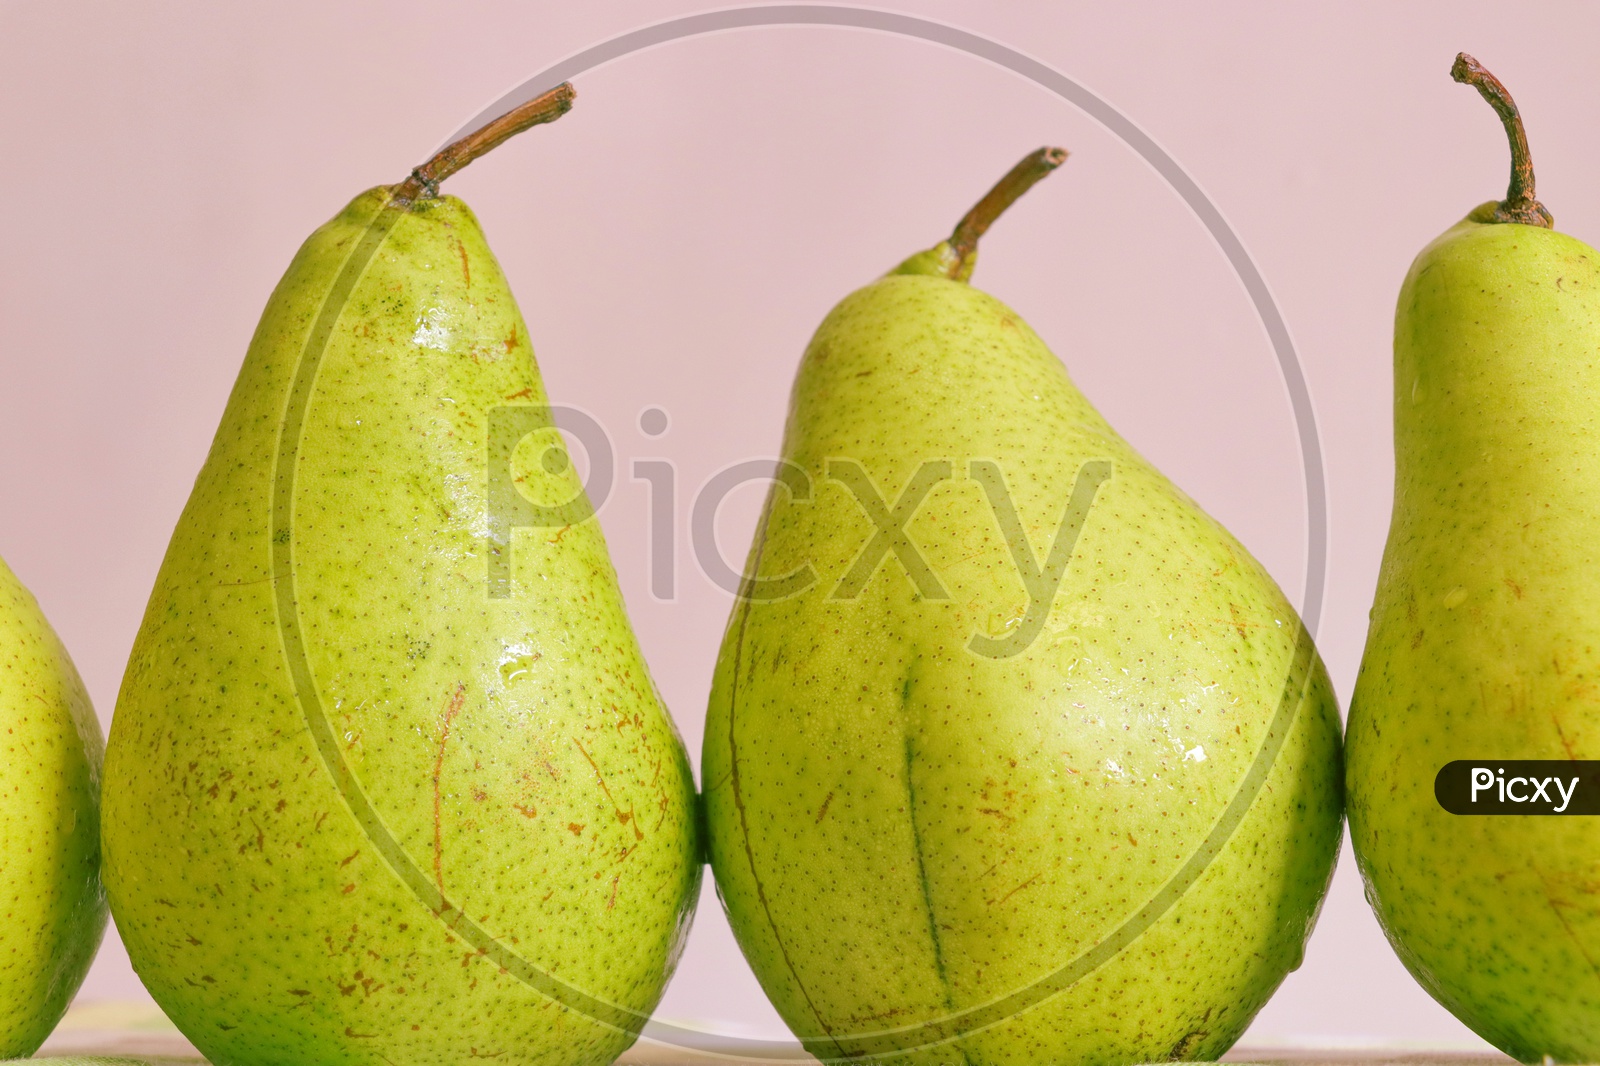 Healthy organic fresh Pear fruits